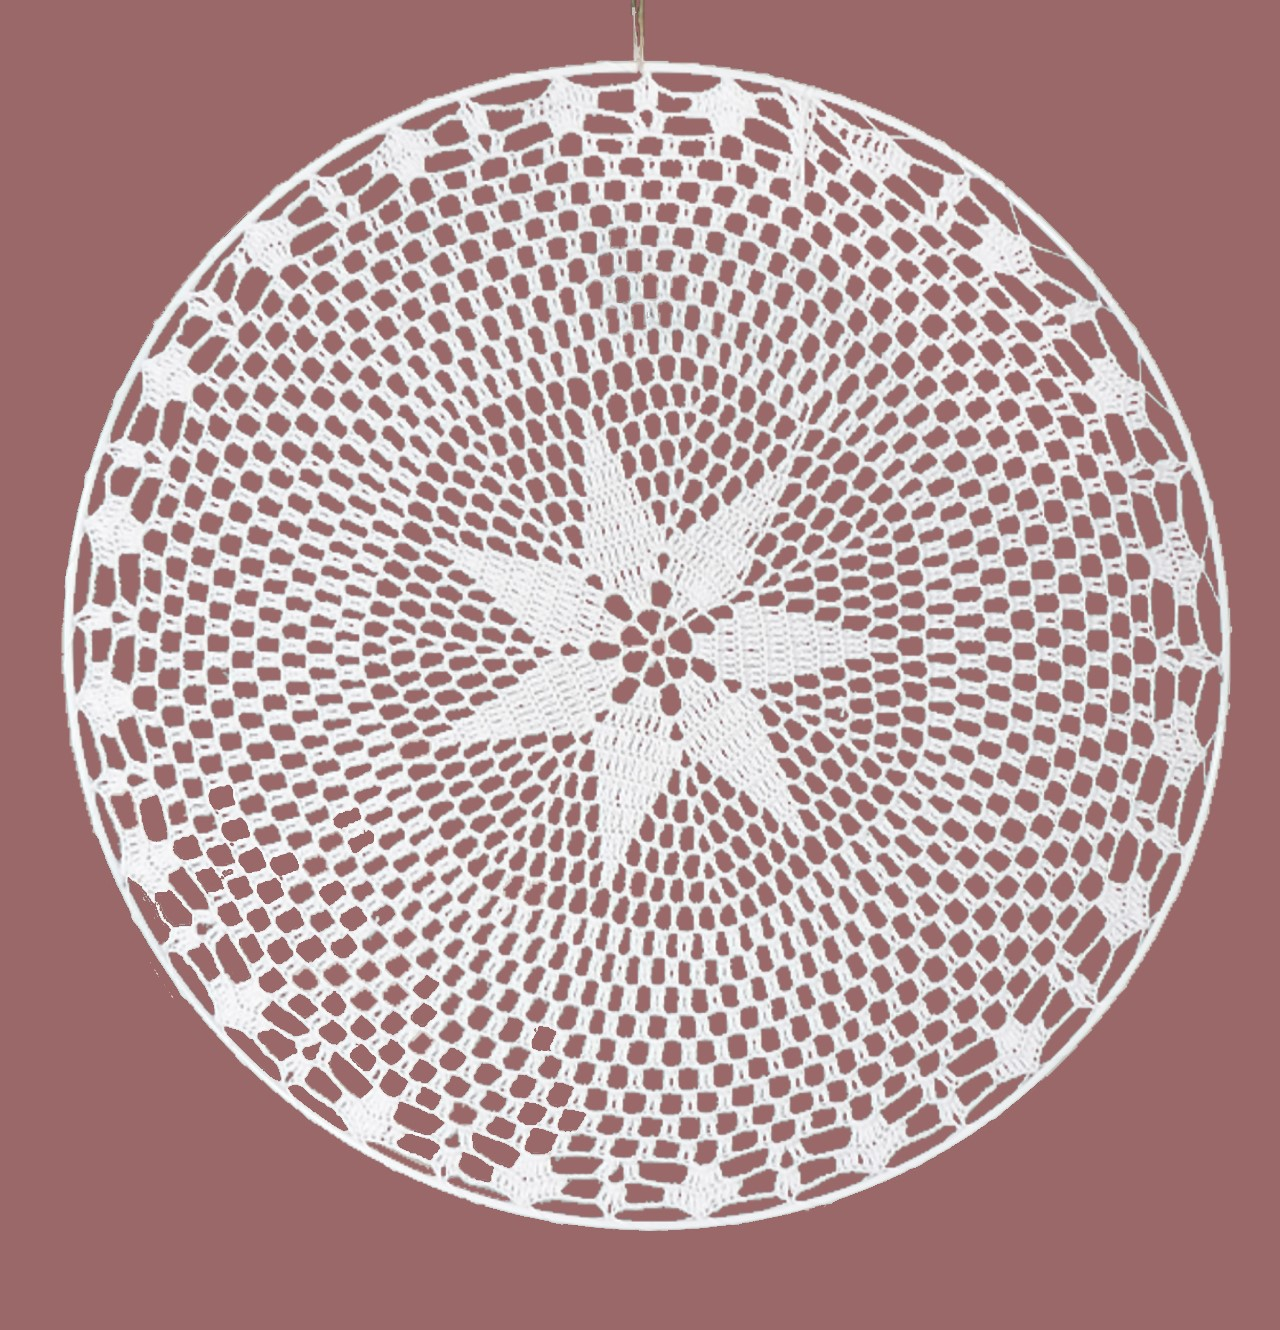 Mandala wit ster roze achtergrond